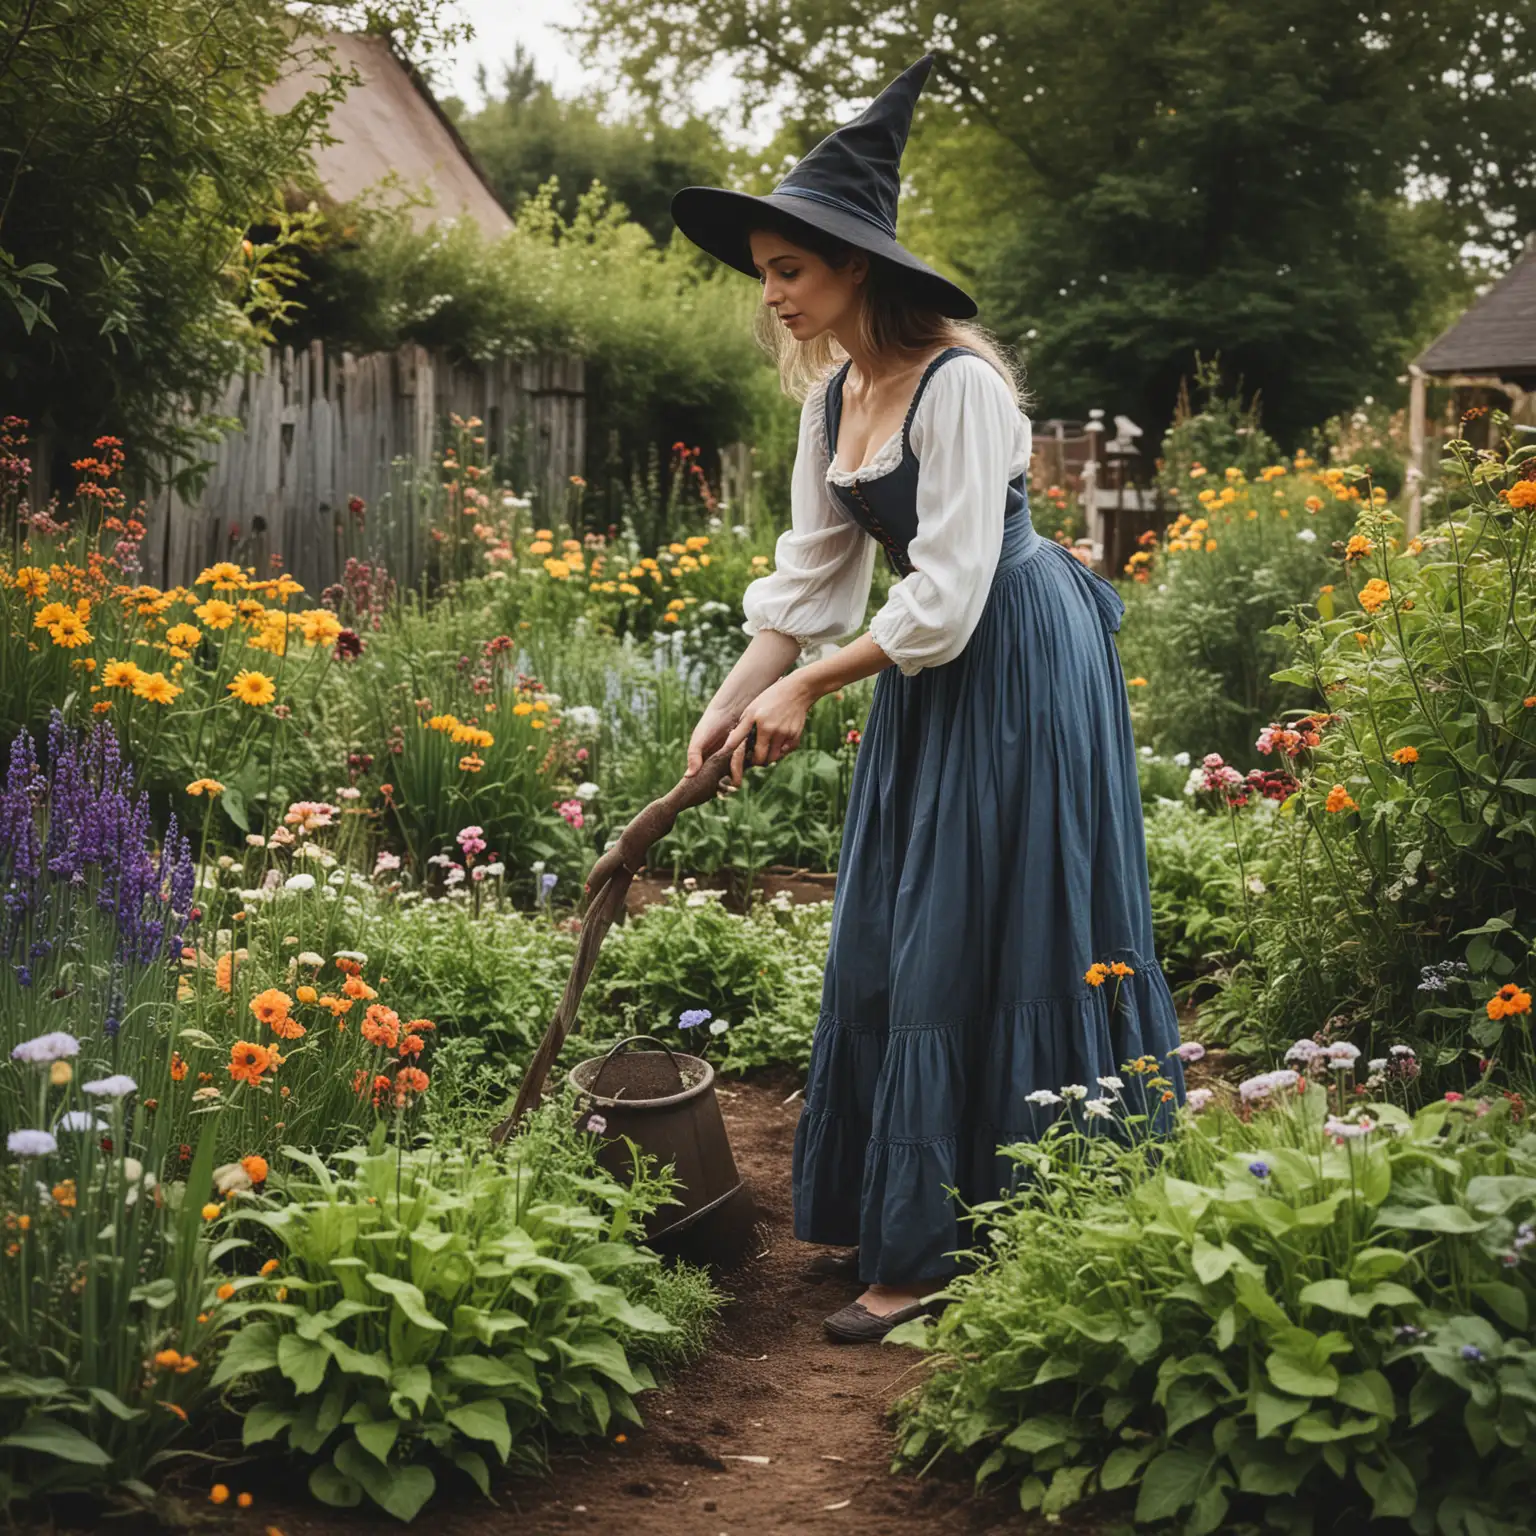 A witch in a summer dress tending her garden